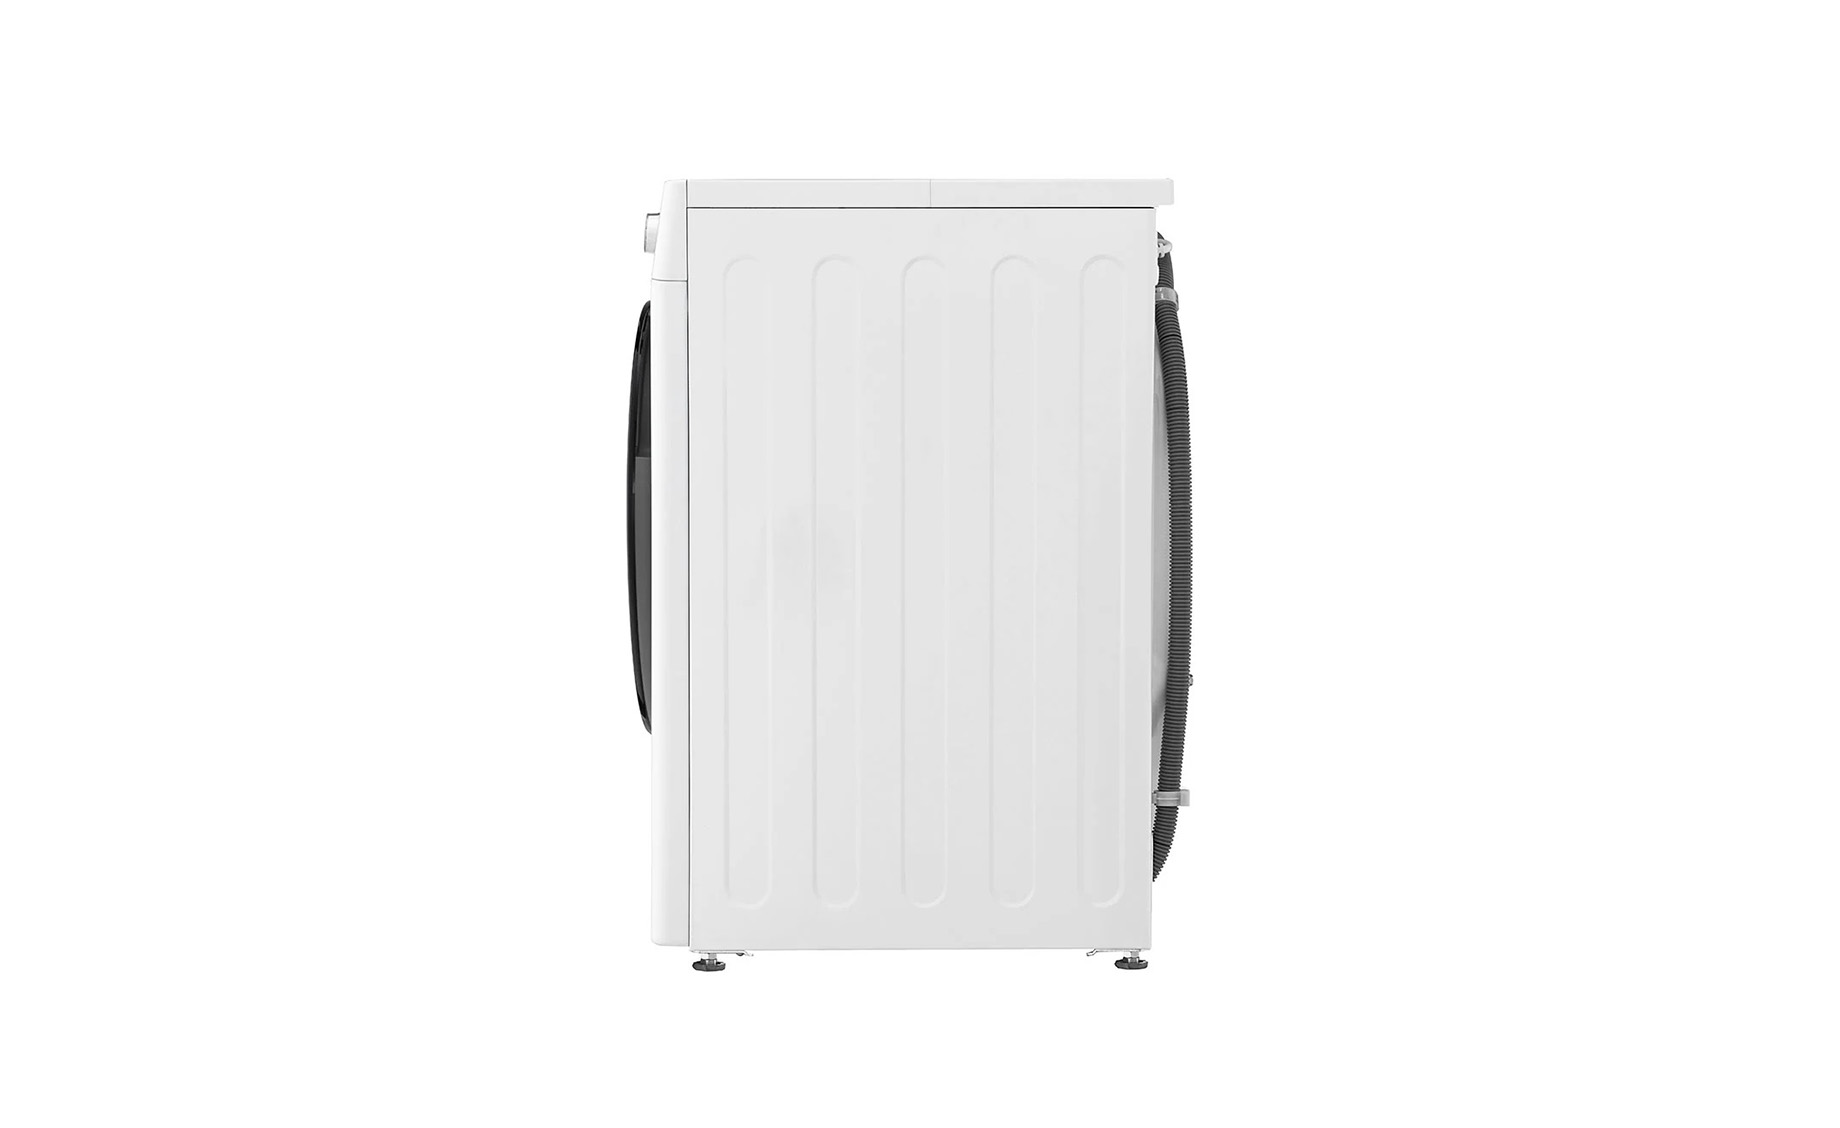 LG F4DR509SBW mašina za pranje i sušenje veša